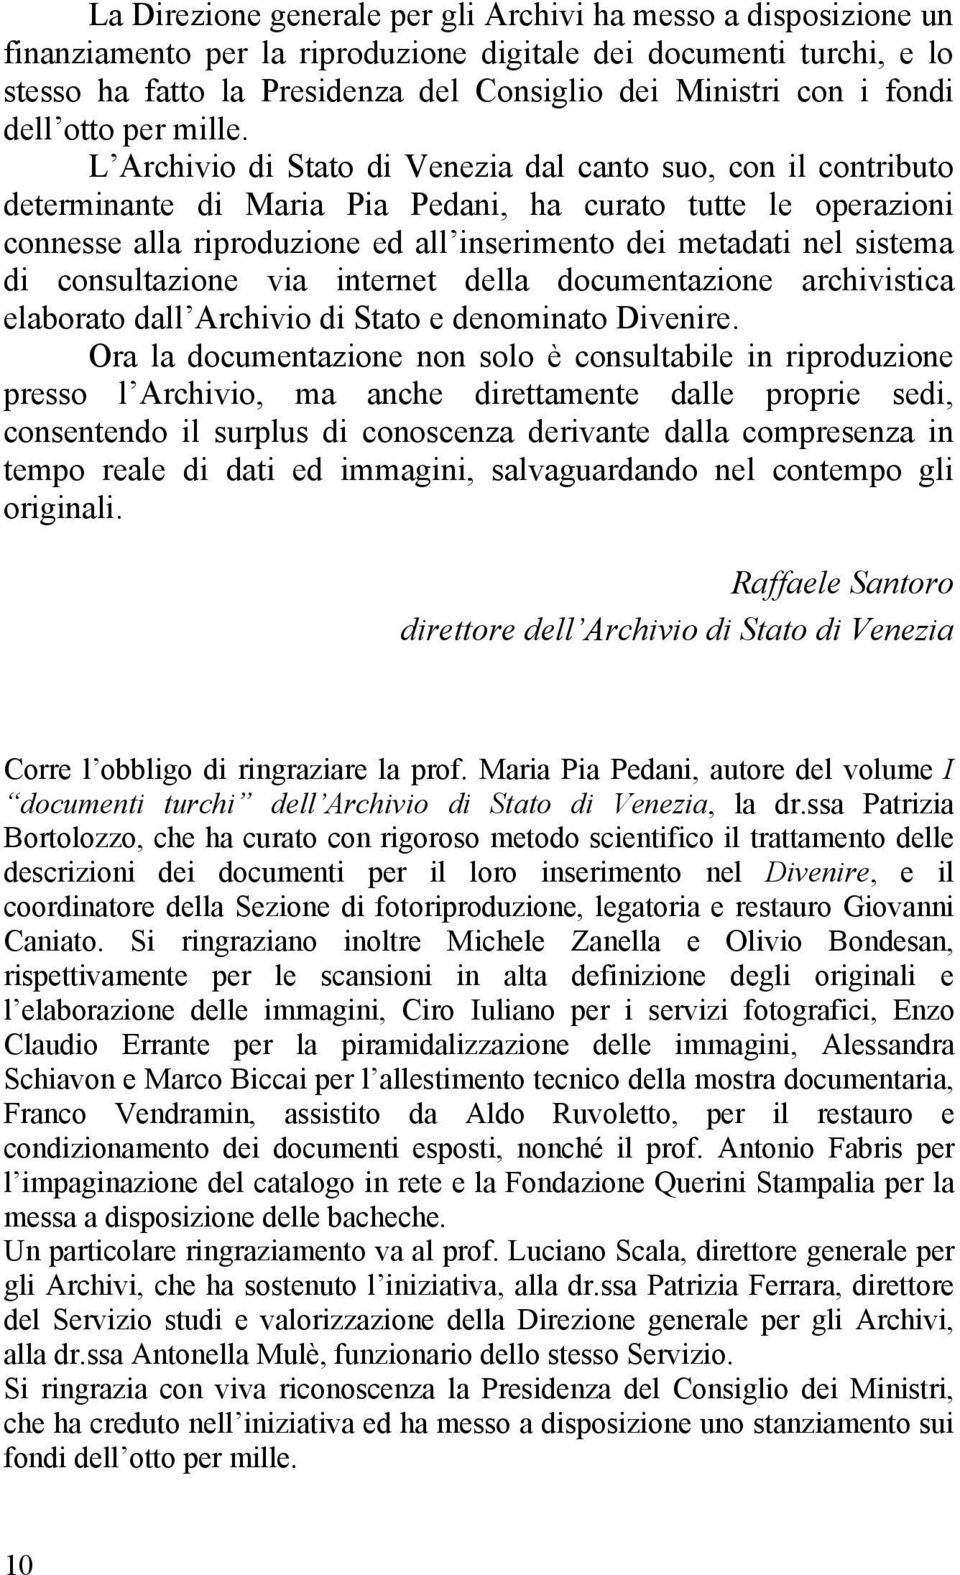 L Archivio di Stato di Venezia dal canto suo, con il contributo determinante di Maria Pia Pedani, ha curato tutte le operazioni connesse alla riproduzione ed all inserimento dei metadati nel sistema